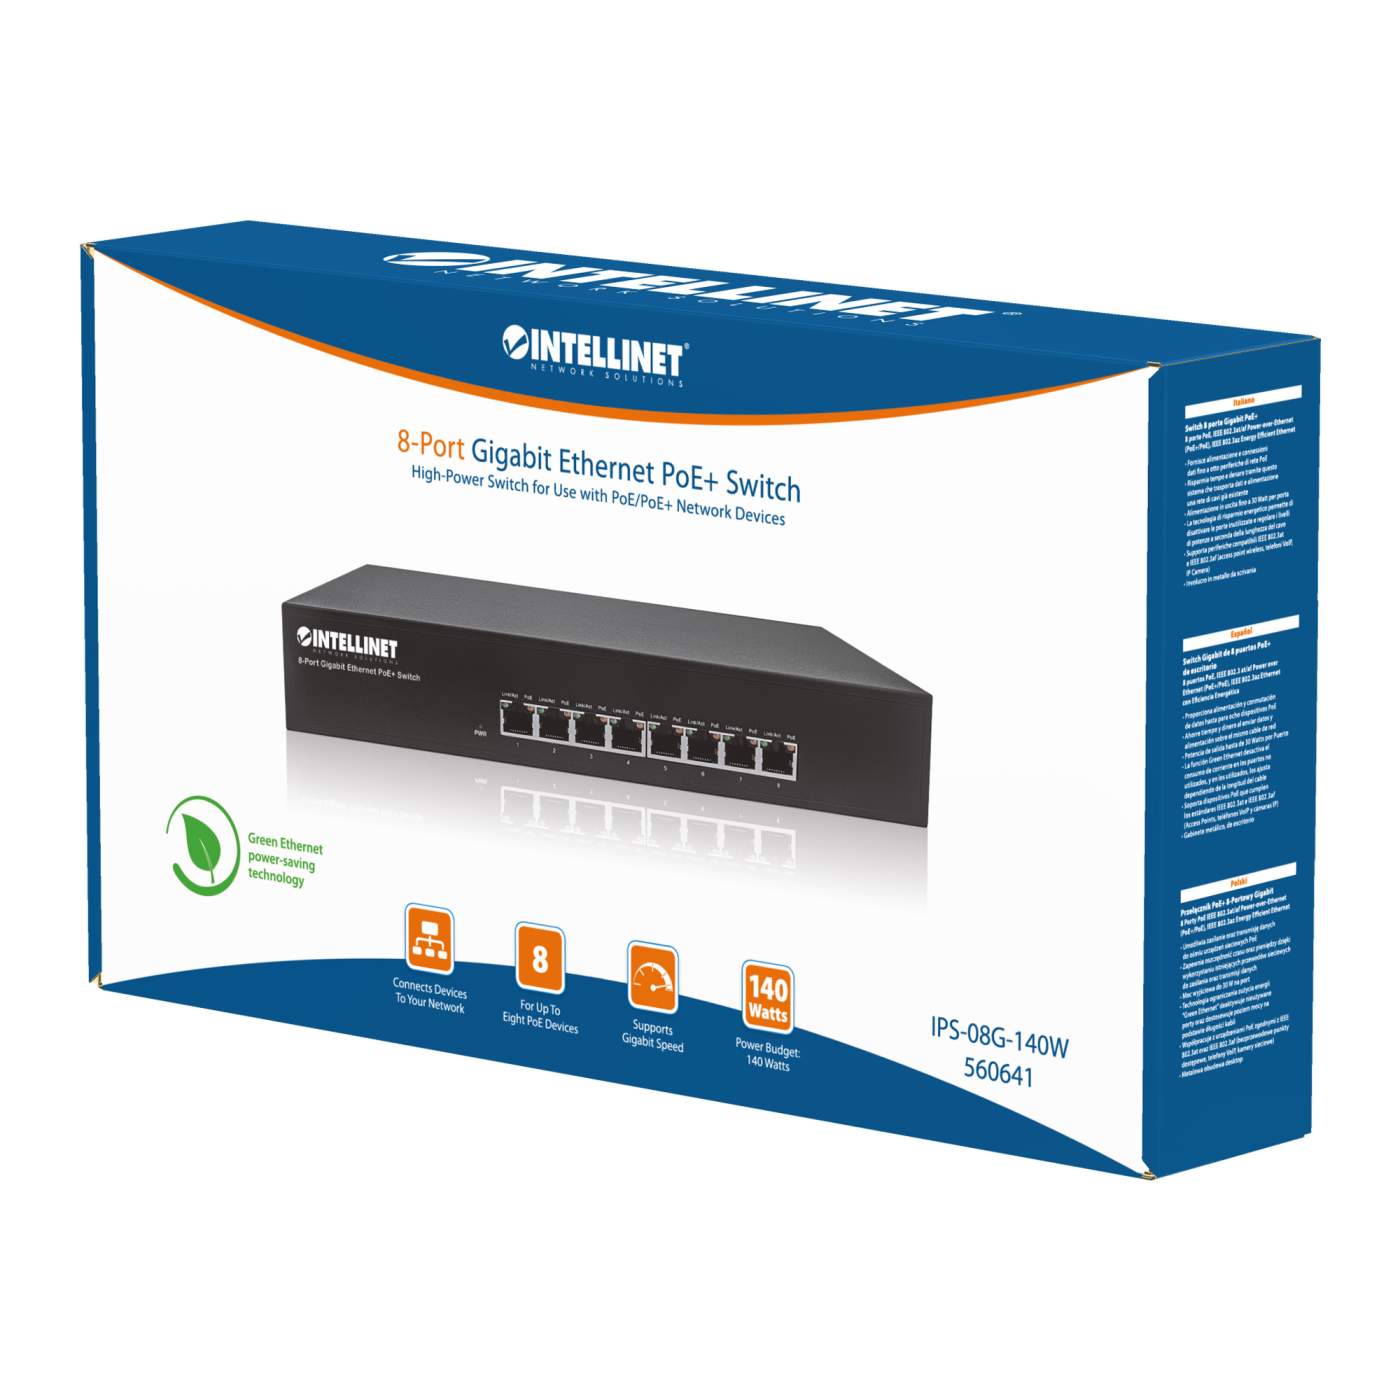 8-Port Gigabit Ethernet PoE+ Switch Packaging Image 2